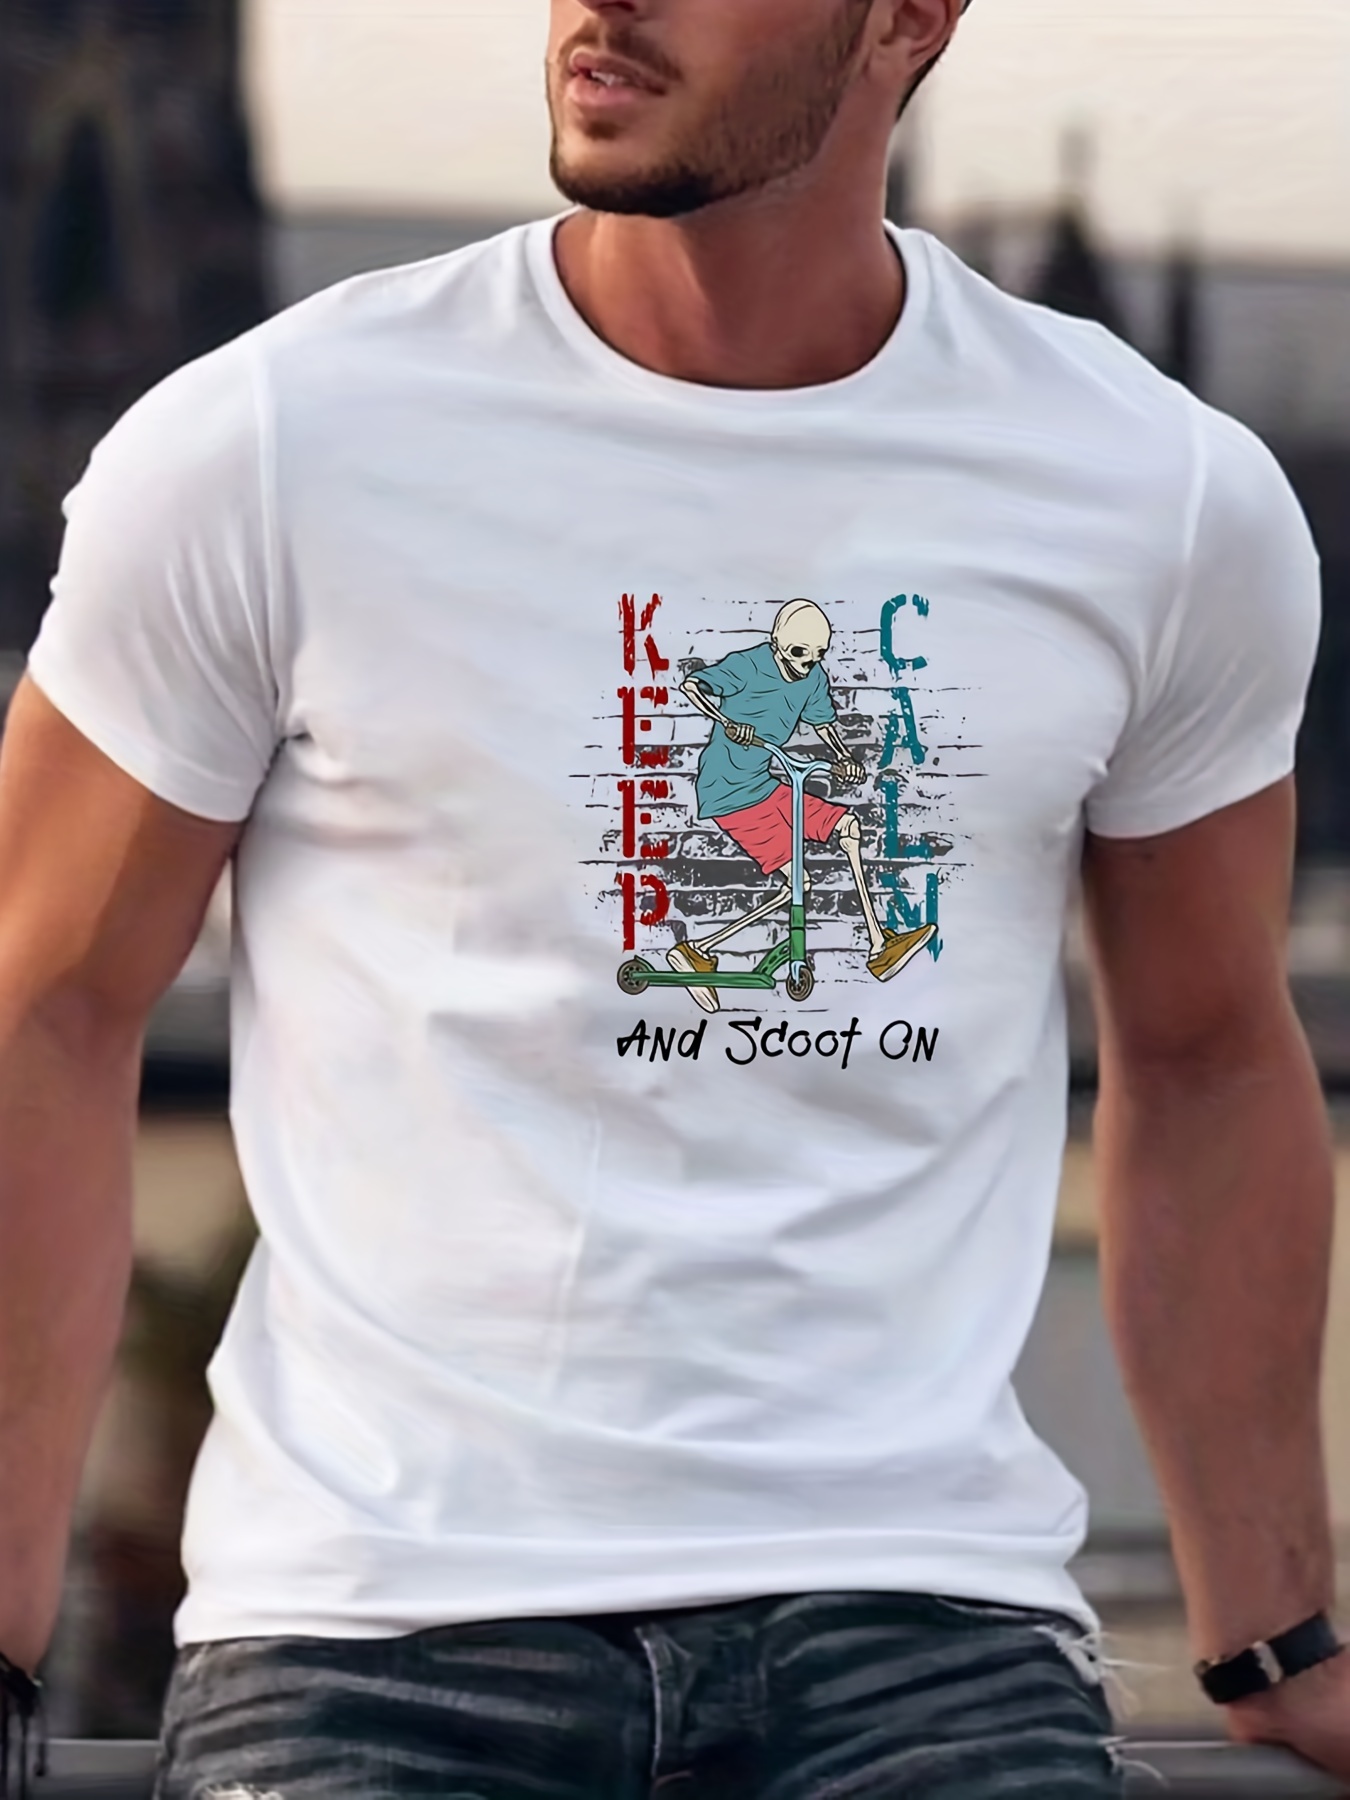 KEEP CLAM AND SCOOT ON Maglietta Comfy Chic Da Uomo Con Stampa A Motivo,  T-shirt Grafica Per Abbigliamento Estivo Da Uomo, Abbigliamento Da Uomo